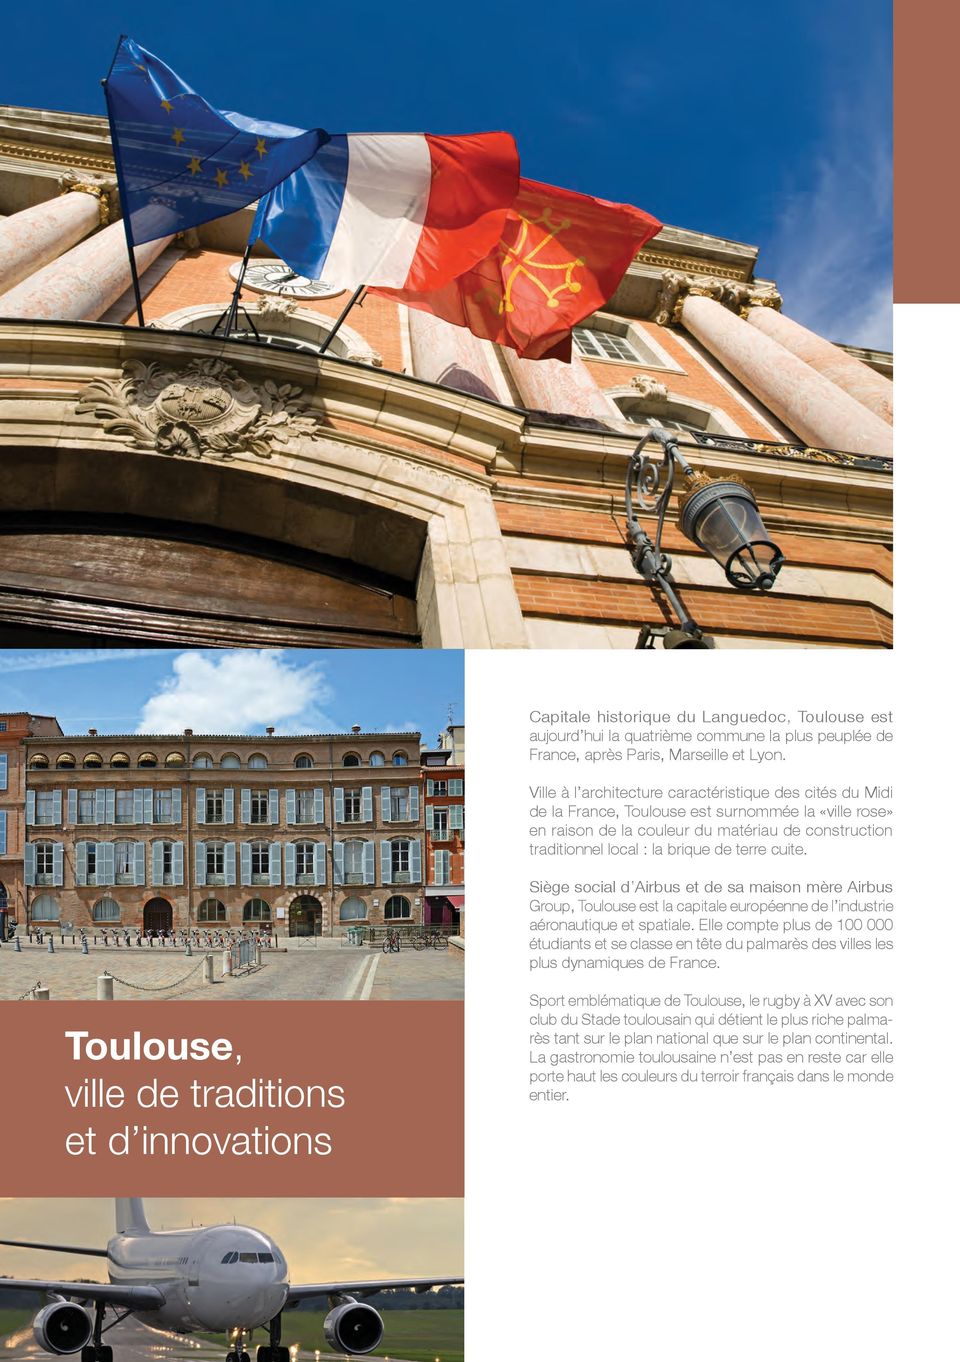 terre cuite. Siège social d Airbus et de sa maison mère Airbus Group, Toulouse est la capitale européenne de l industrie aéronautique et spatiale.